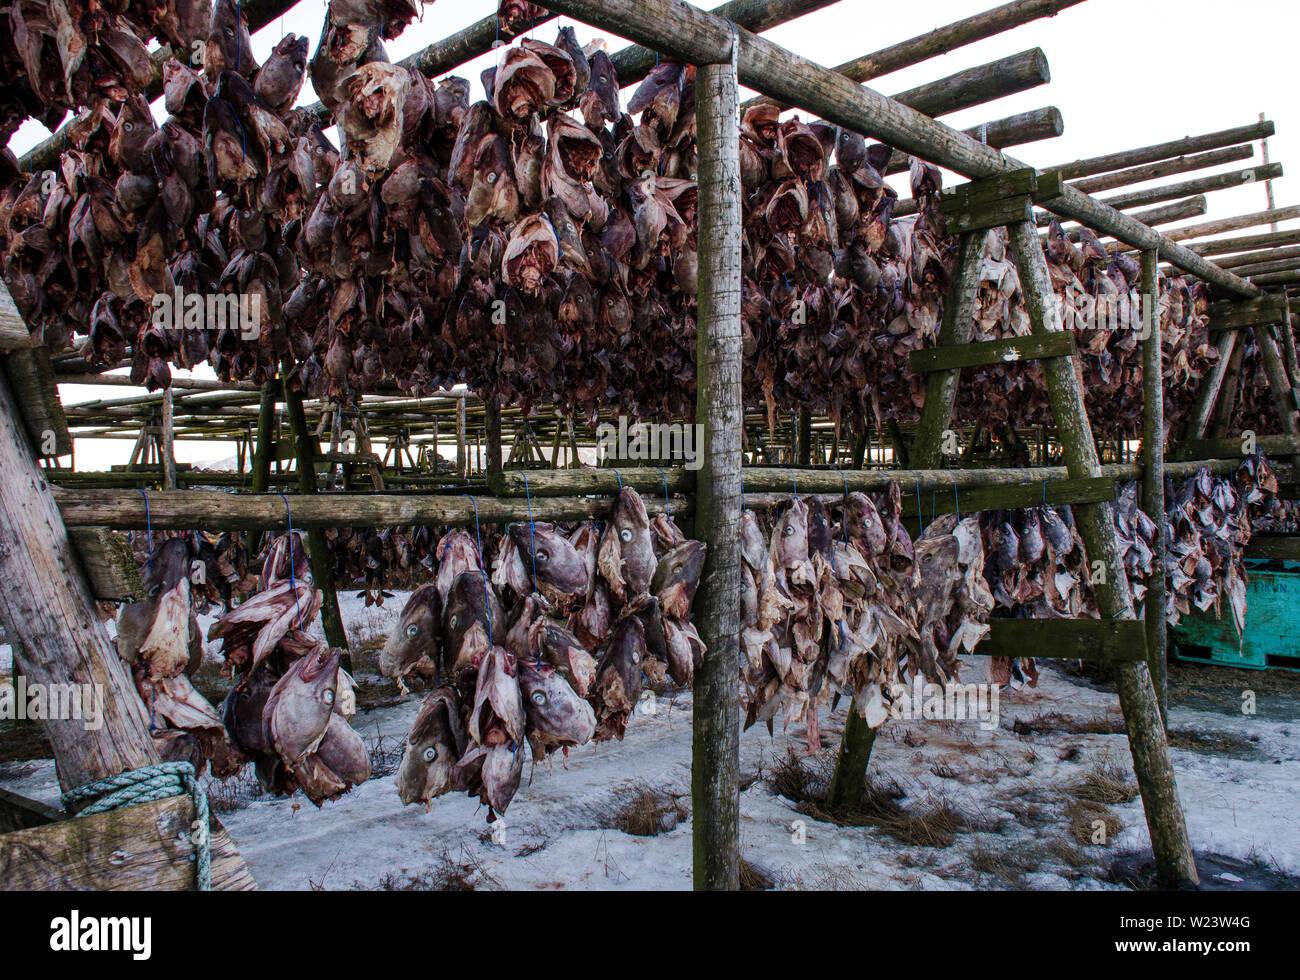 Un montón de big fish es secado sobre soportes de madera bajo el cielo  abierto. Tradicional Pescado secado al aire libre para hacer Hardfiskur,  Islandia Fotografía de stock - Alamy